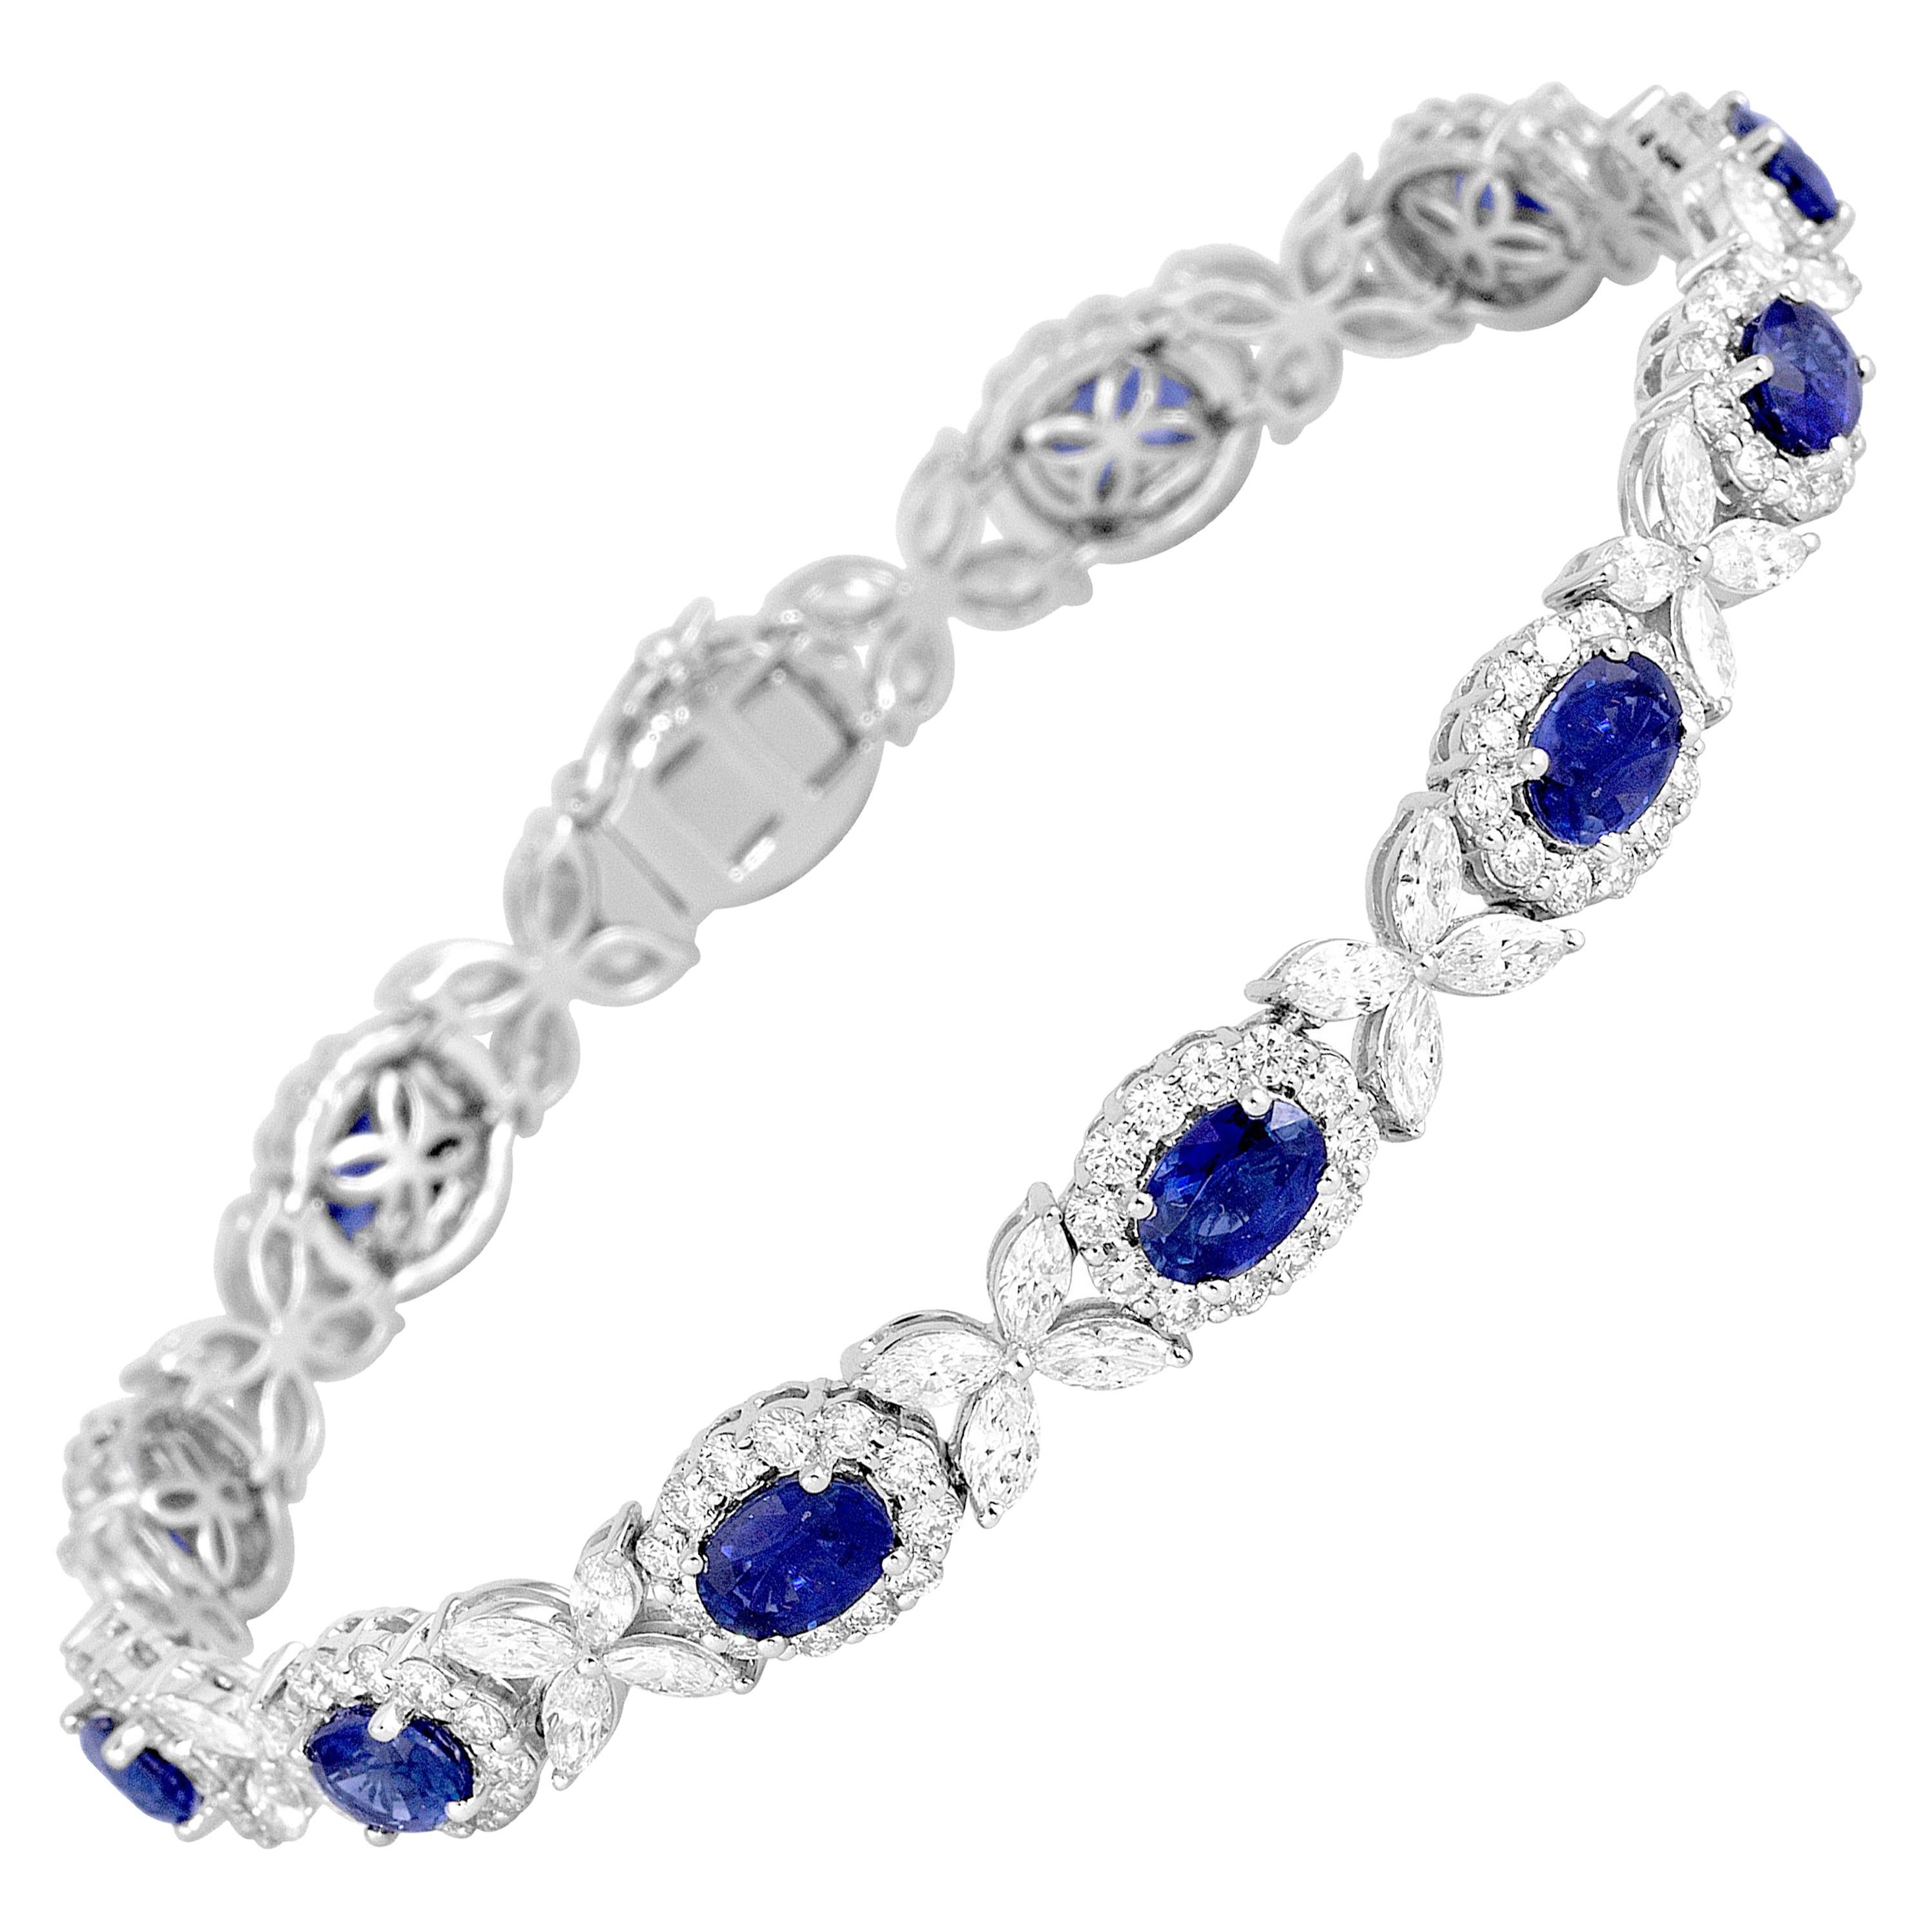 8.14 Carat Oval Cut Vivid Blue Sapphire and 6.95 Carat Diamond Bracelet